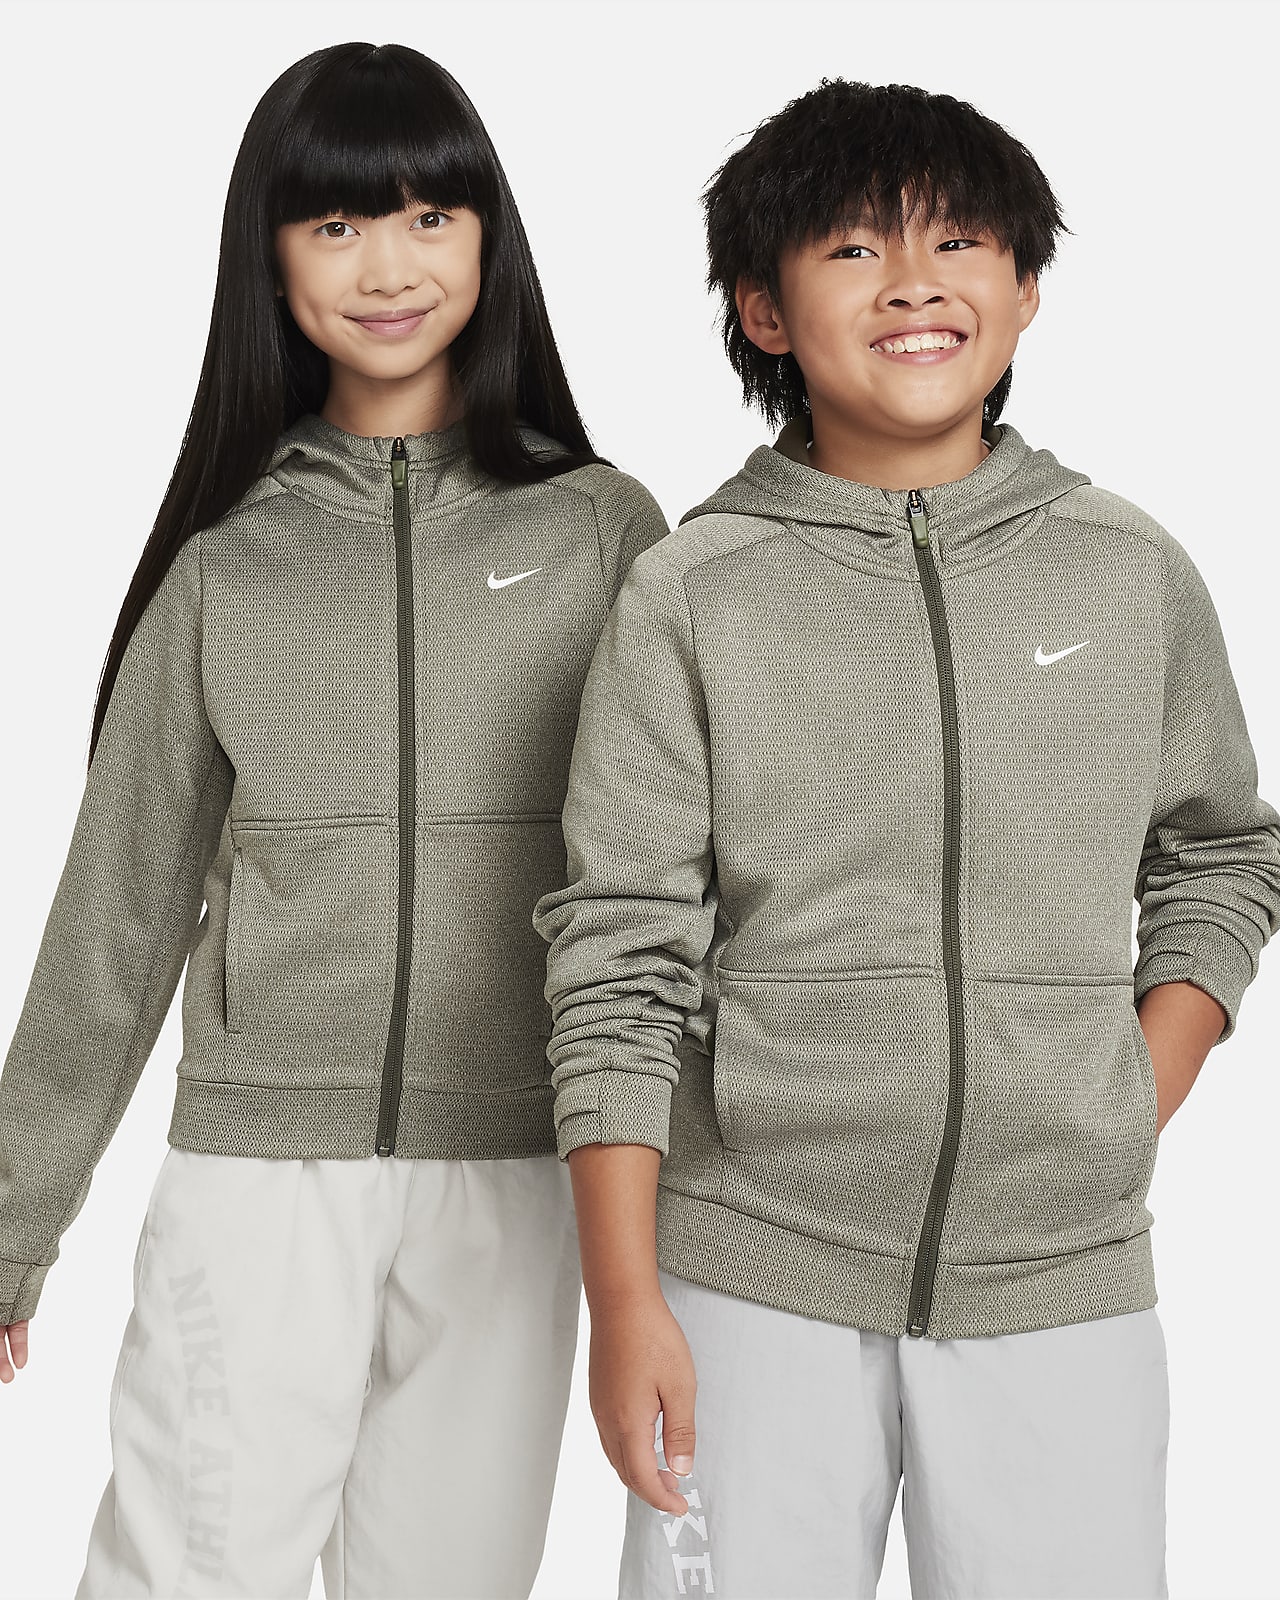 Μπλούζα με κουκούλα και φερμουάρ σε όλο το μήκος Nike Therma-FIT για μεγάλα παιδιά